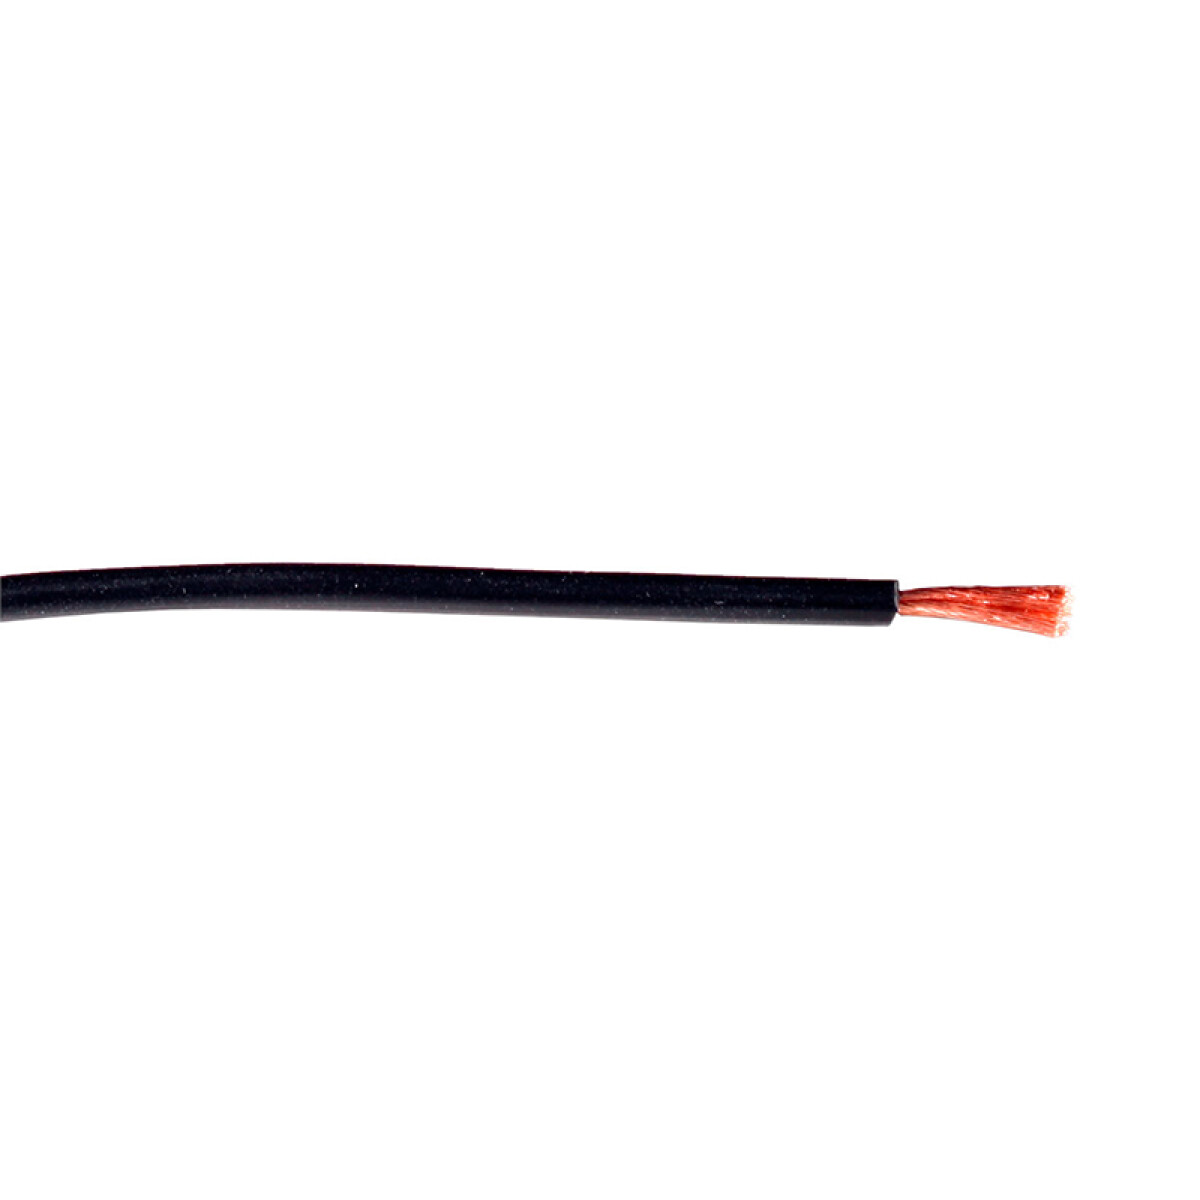 Cable de cobre flexible 10mm² negro - Rollo 100mt - C94367 